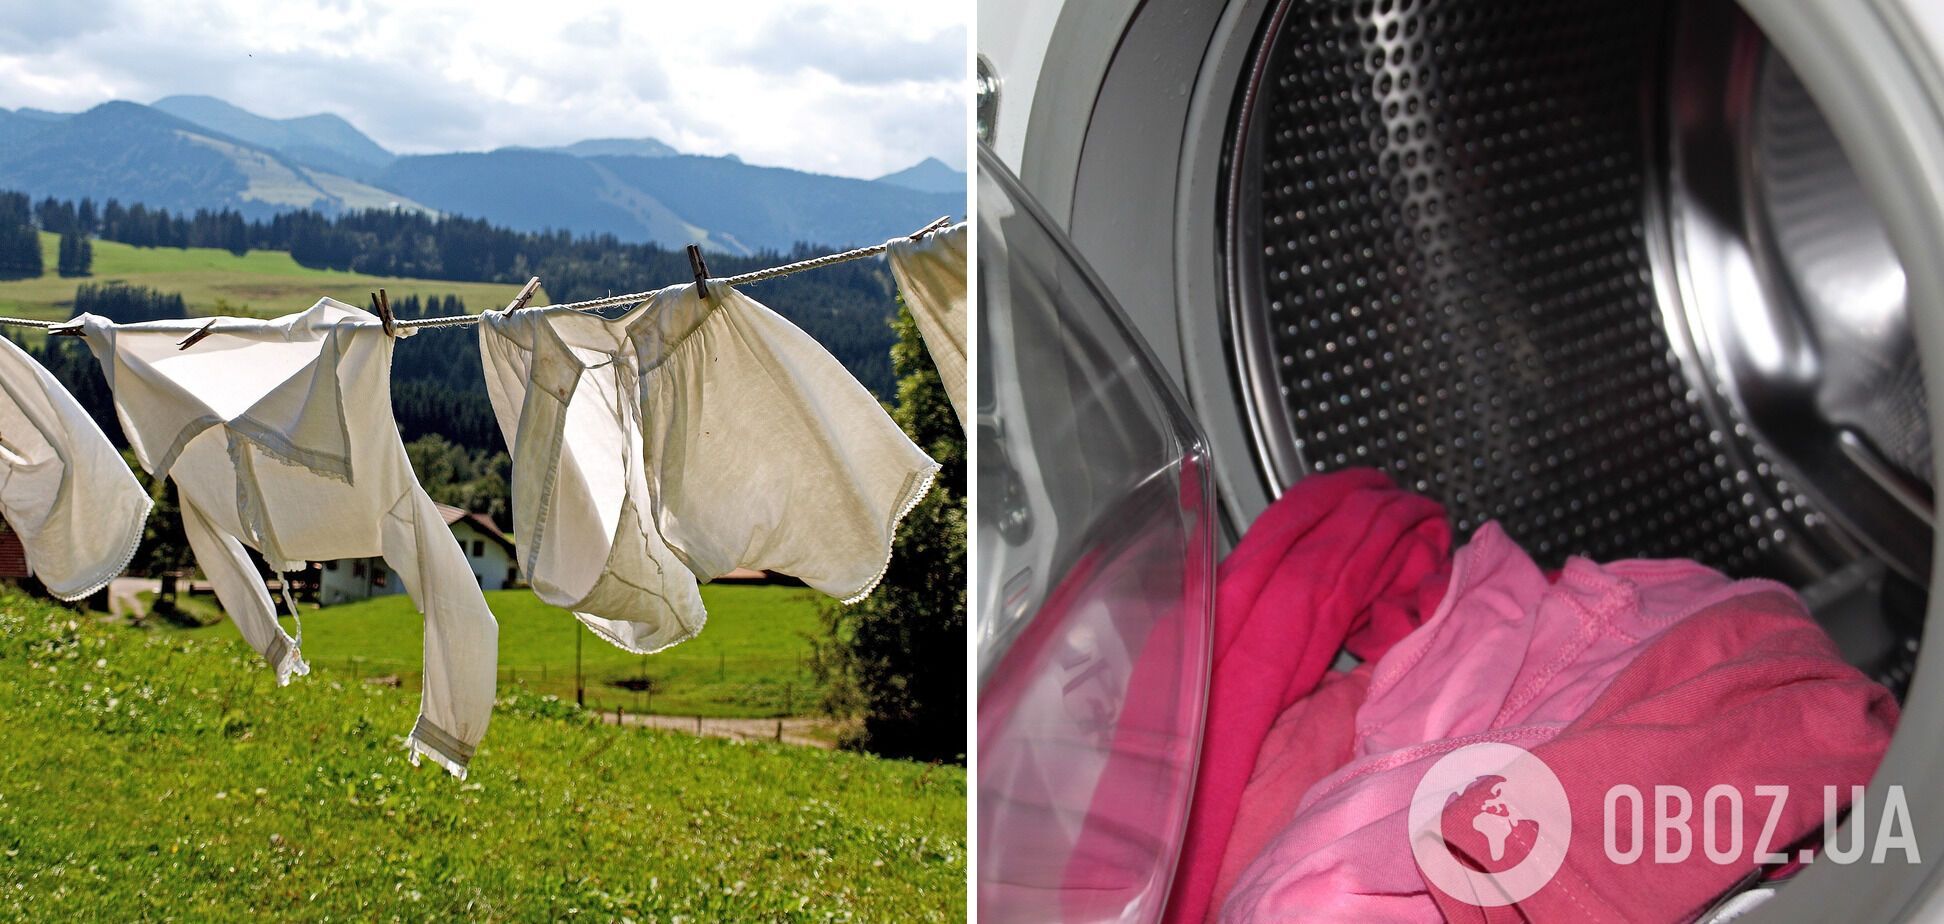 5 вещей, которые категорически нельзя стирать в стиральной машине